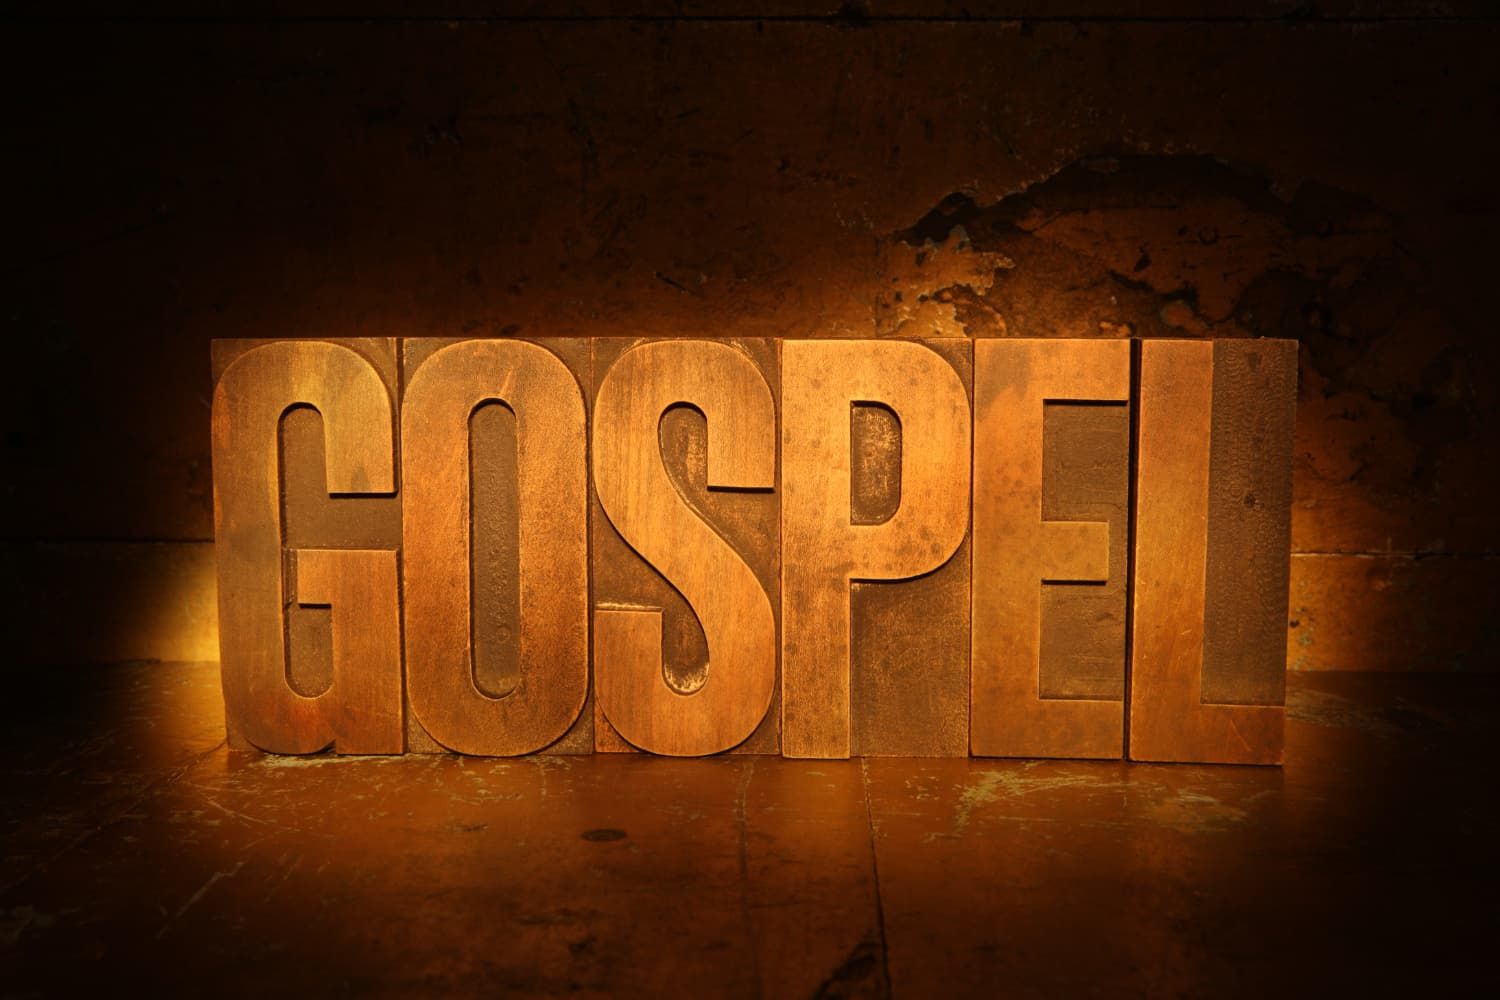 gospel-f1f23125 Jesus (of Nazareth)